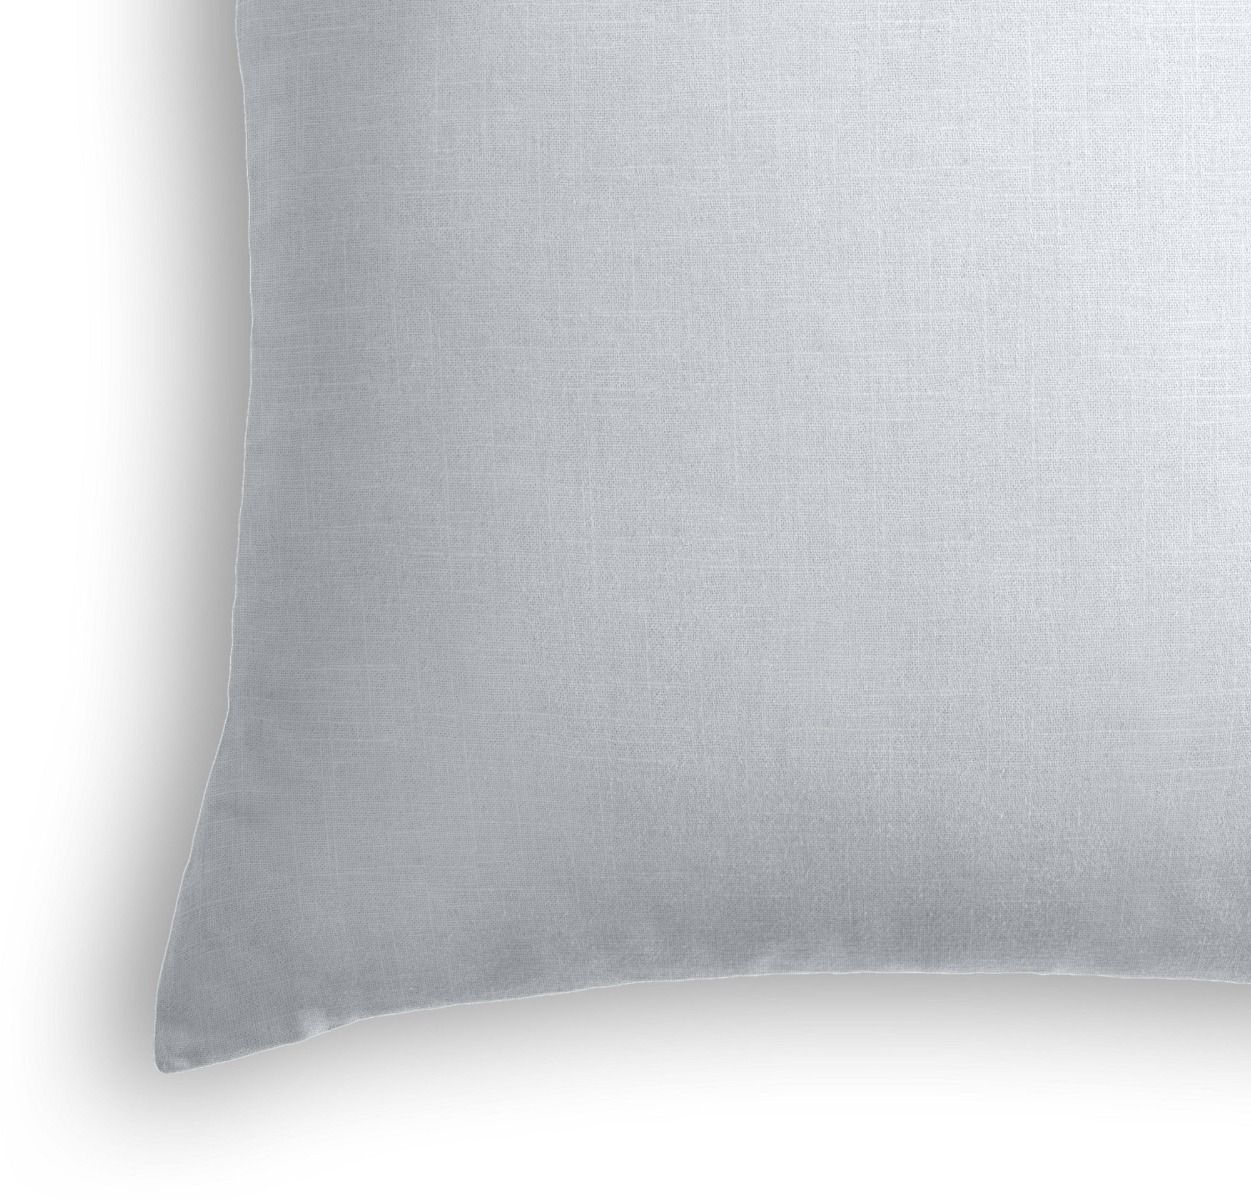 Classic Linen Pillow, Pale Blue, 18" x 18" - Image 1